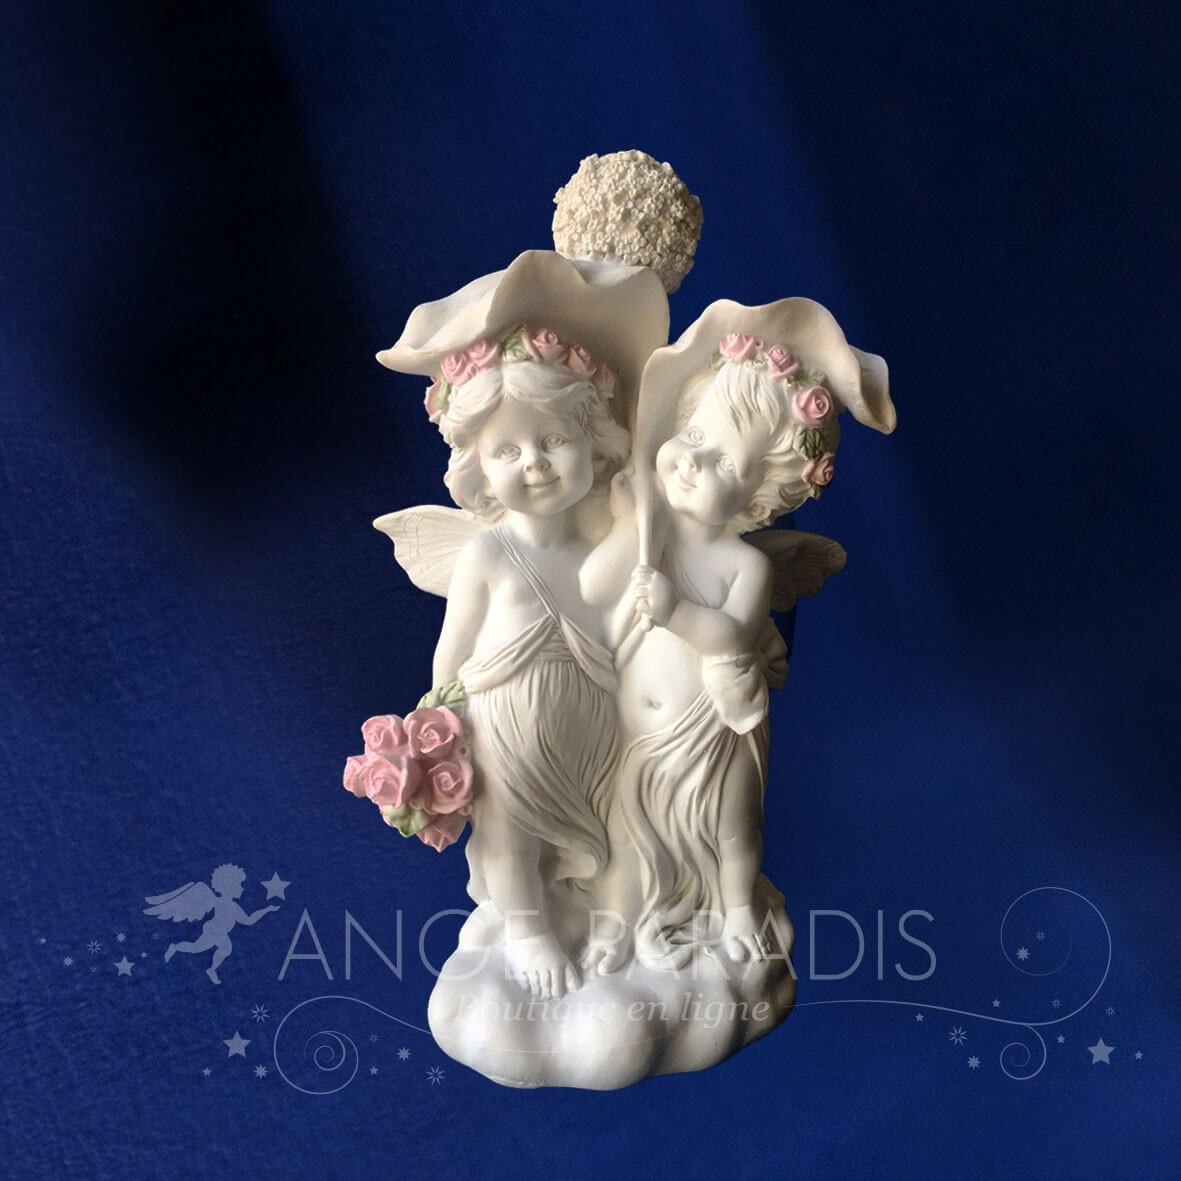 2 Anges Amoureux "figurine D'amour" - 14cm